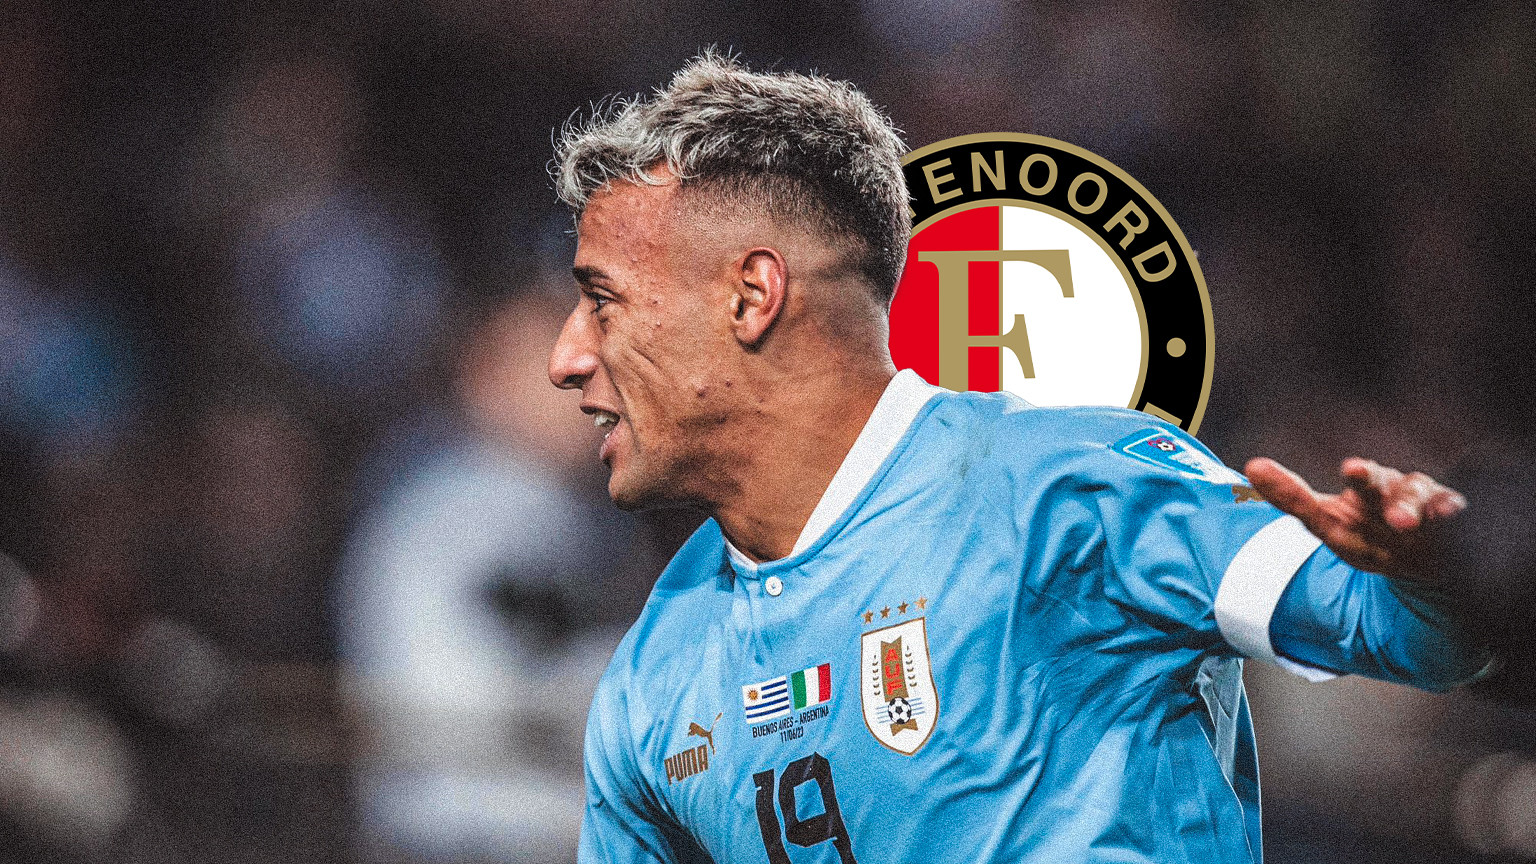 Rodríguez verklaart transfersituatie; kansen Feyenoord nemen toe